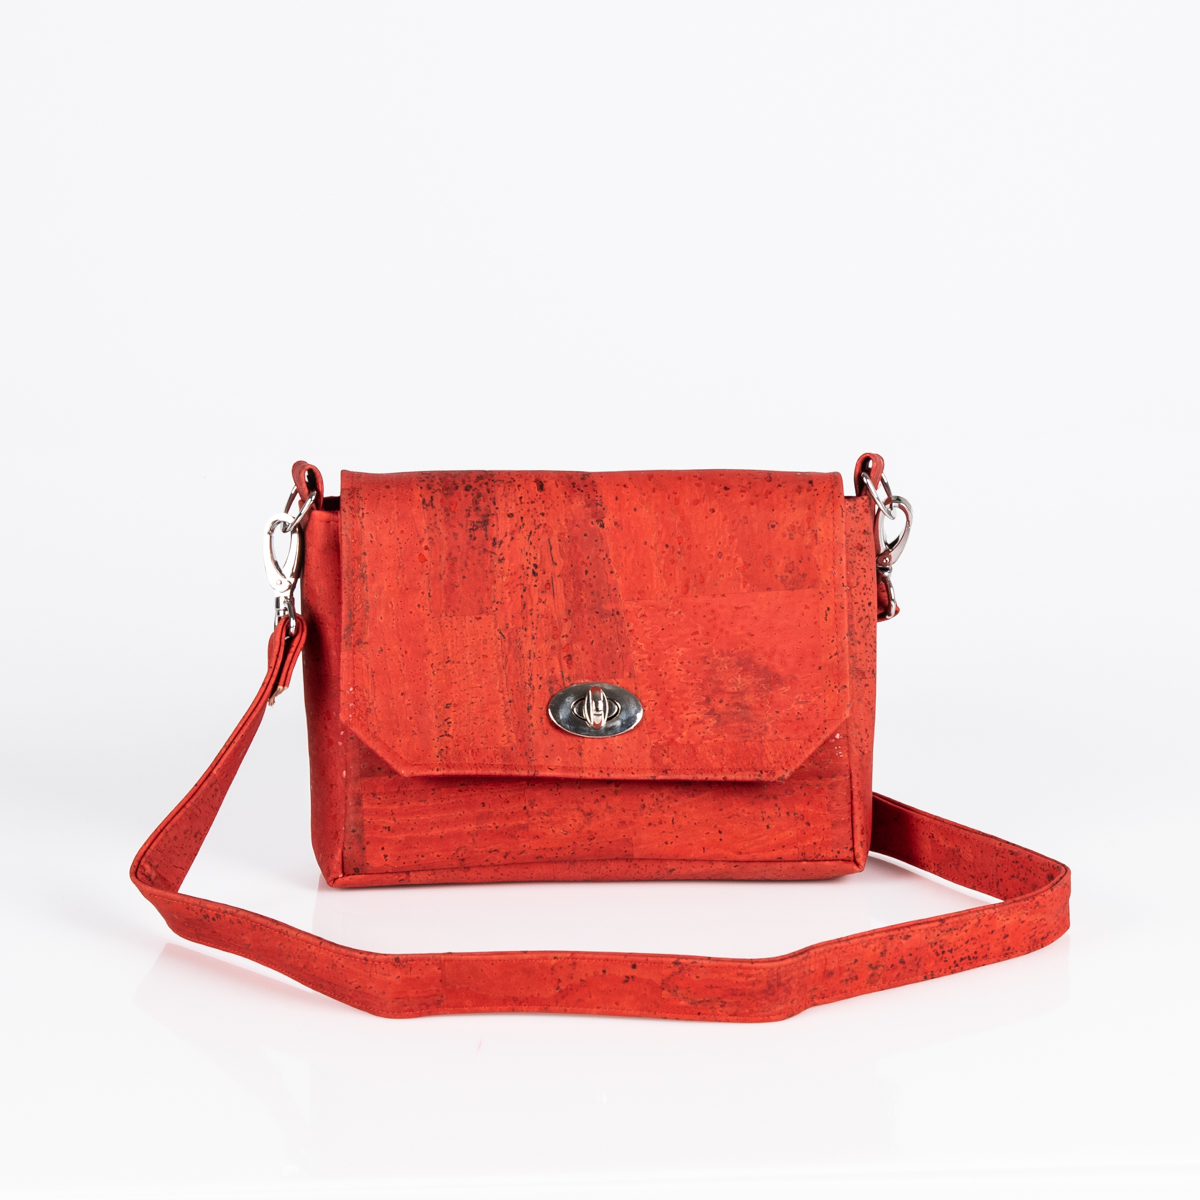 Handtasche Sally in Rot von Q.Linda Manufaktur Vorderansicht mit rotem Gurt